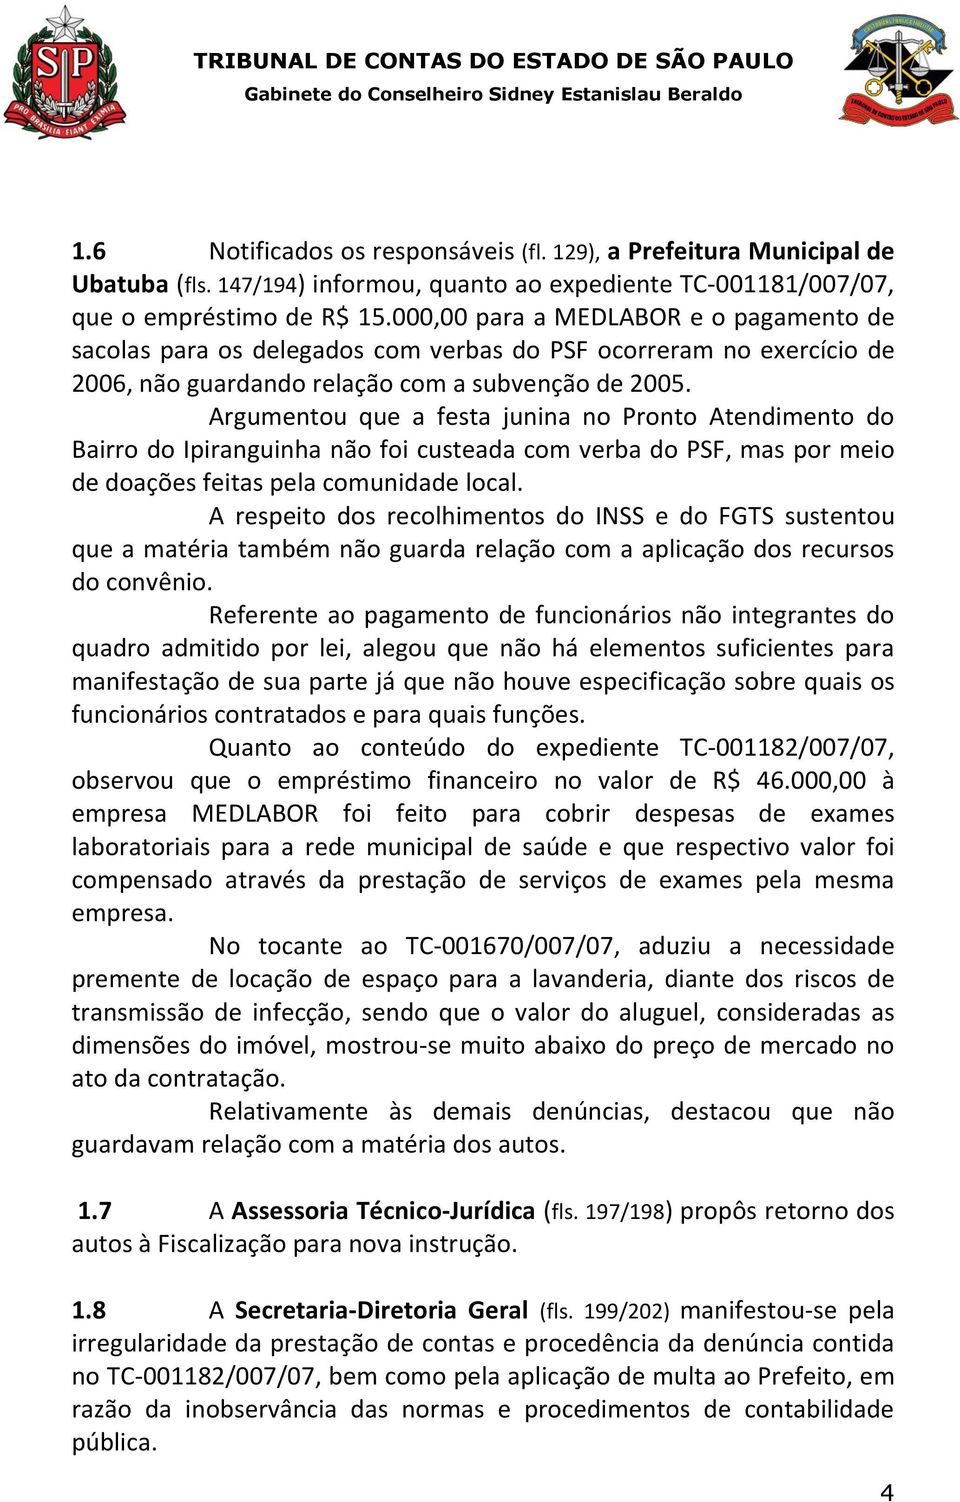 Argumentou que a festa junina no Pronto Atendimento do Bairro do Ipiranguinha não foi custeada com verba do PSF, mas por meio de doações feitas pela comunidade local.